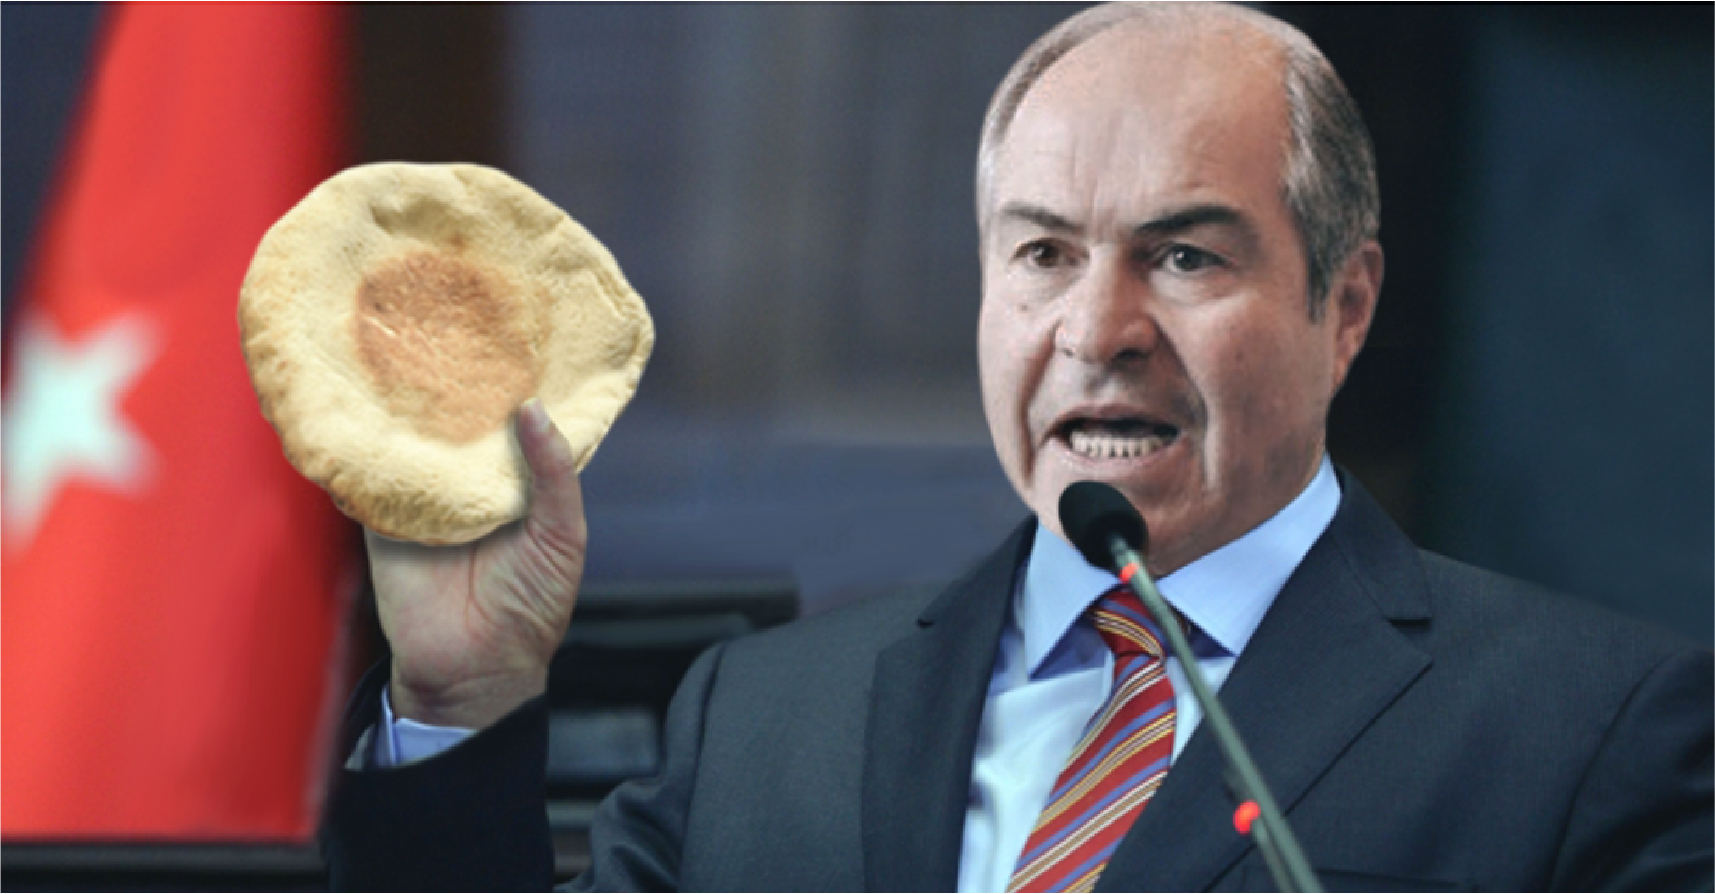 صورة الحكومة الأردنية تنصح المواطنين بالبحث عن مصادر بديلة للطاقة غير الخبز